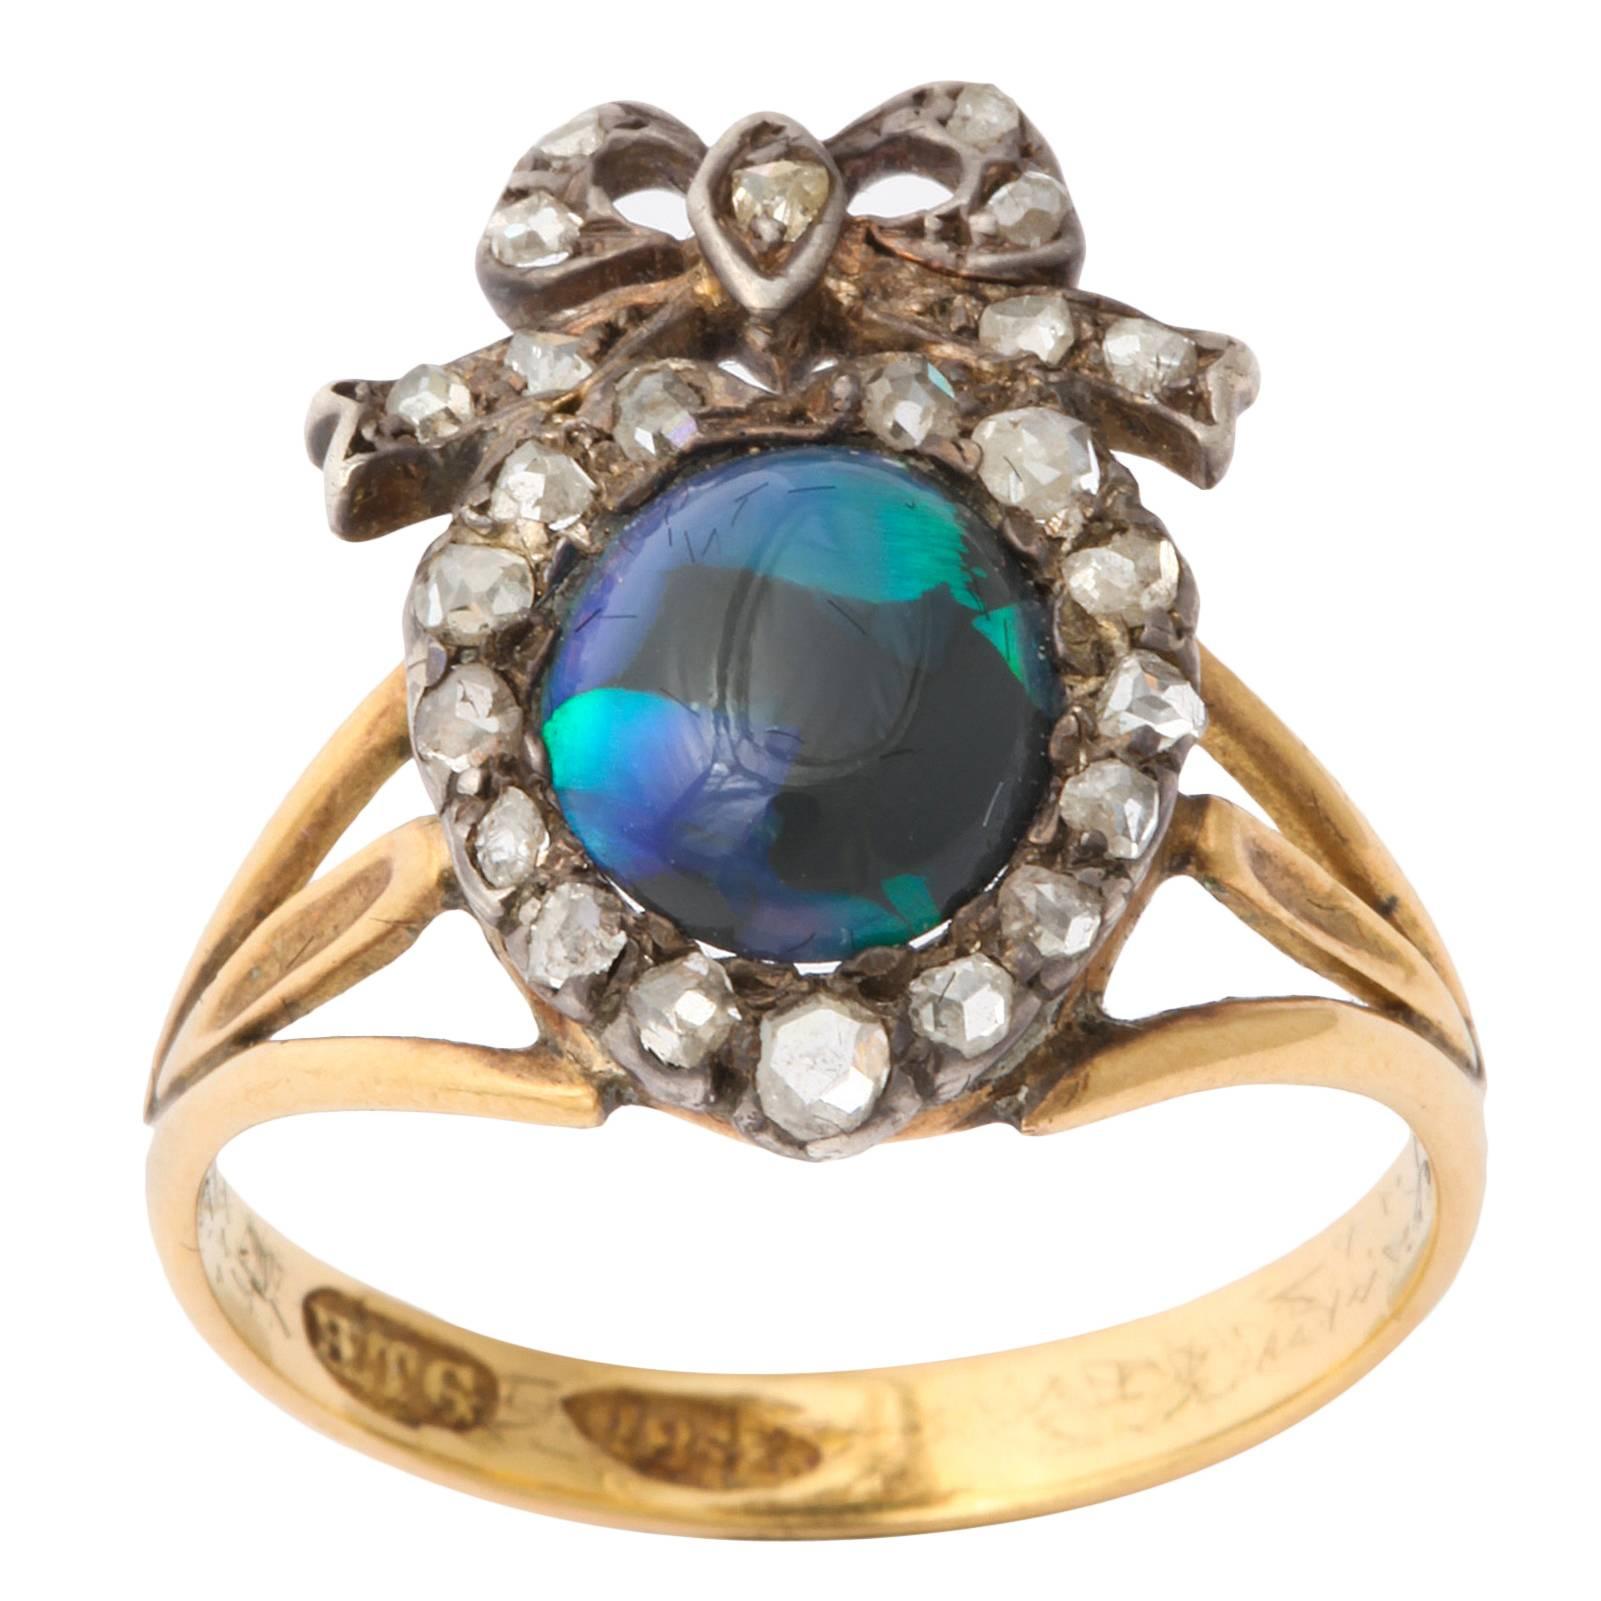 Antique Victorian Sumptuous Black Opal Ring